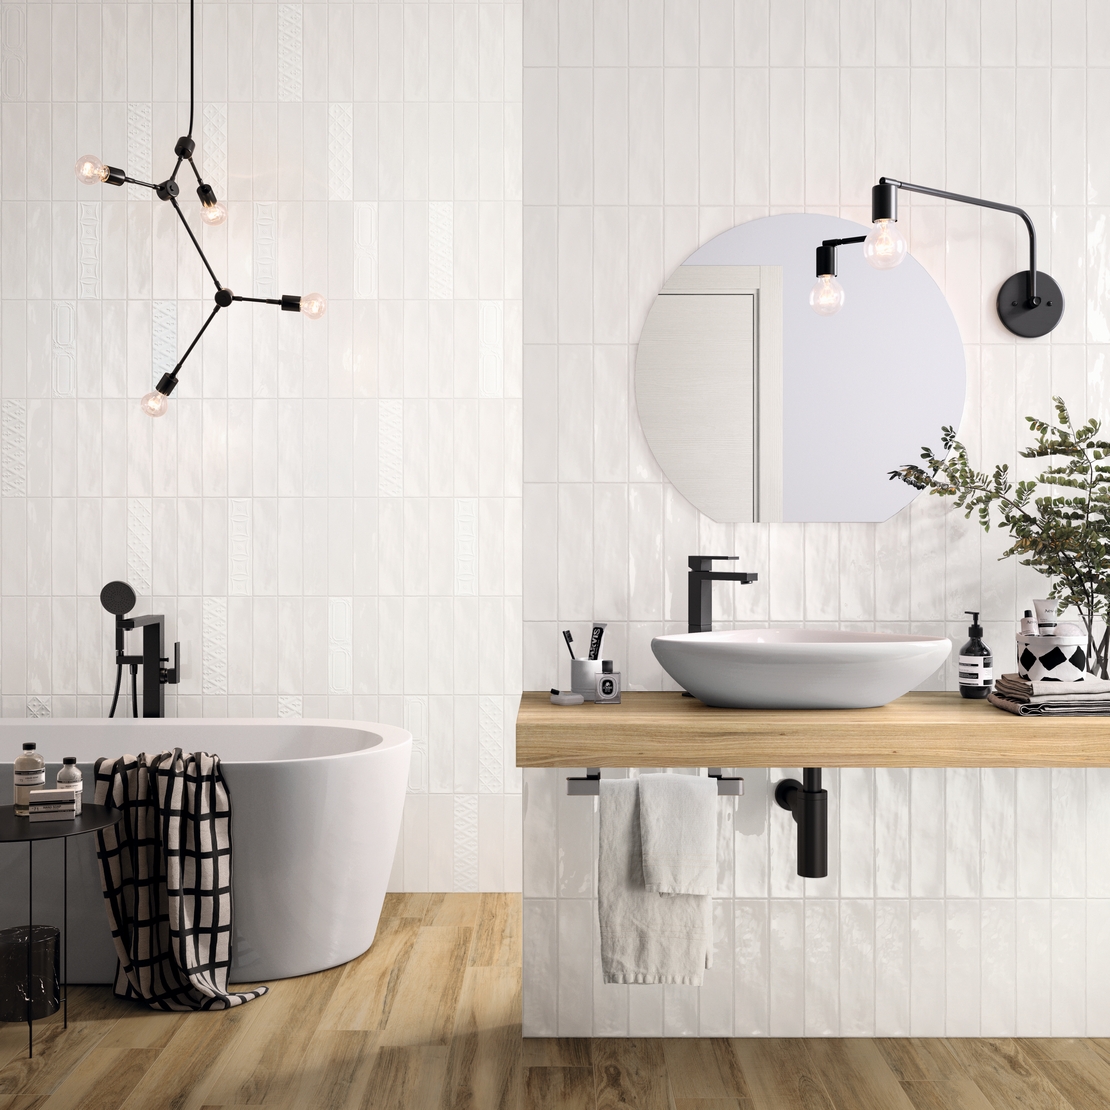 Bagno moderno con vasca. Effetto legno e pareti bianco per uno stile vintage - Ambienti Iperceramica